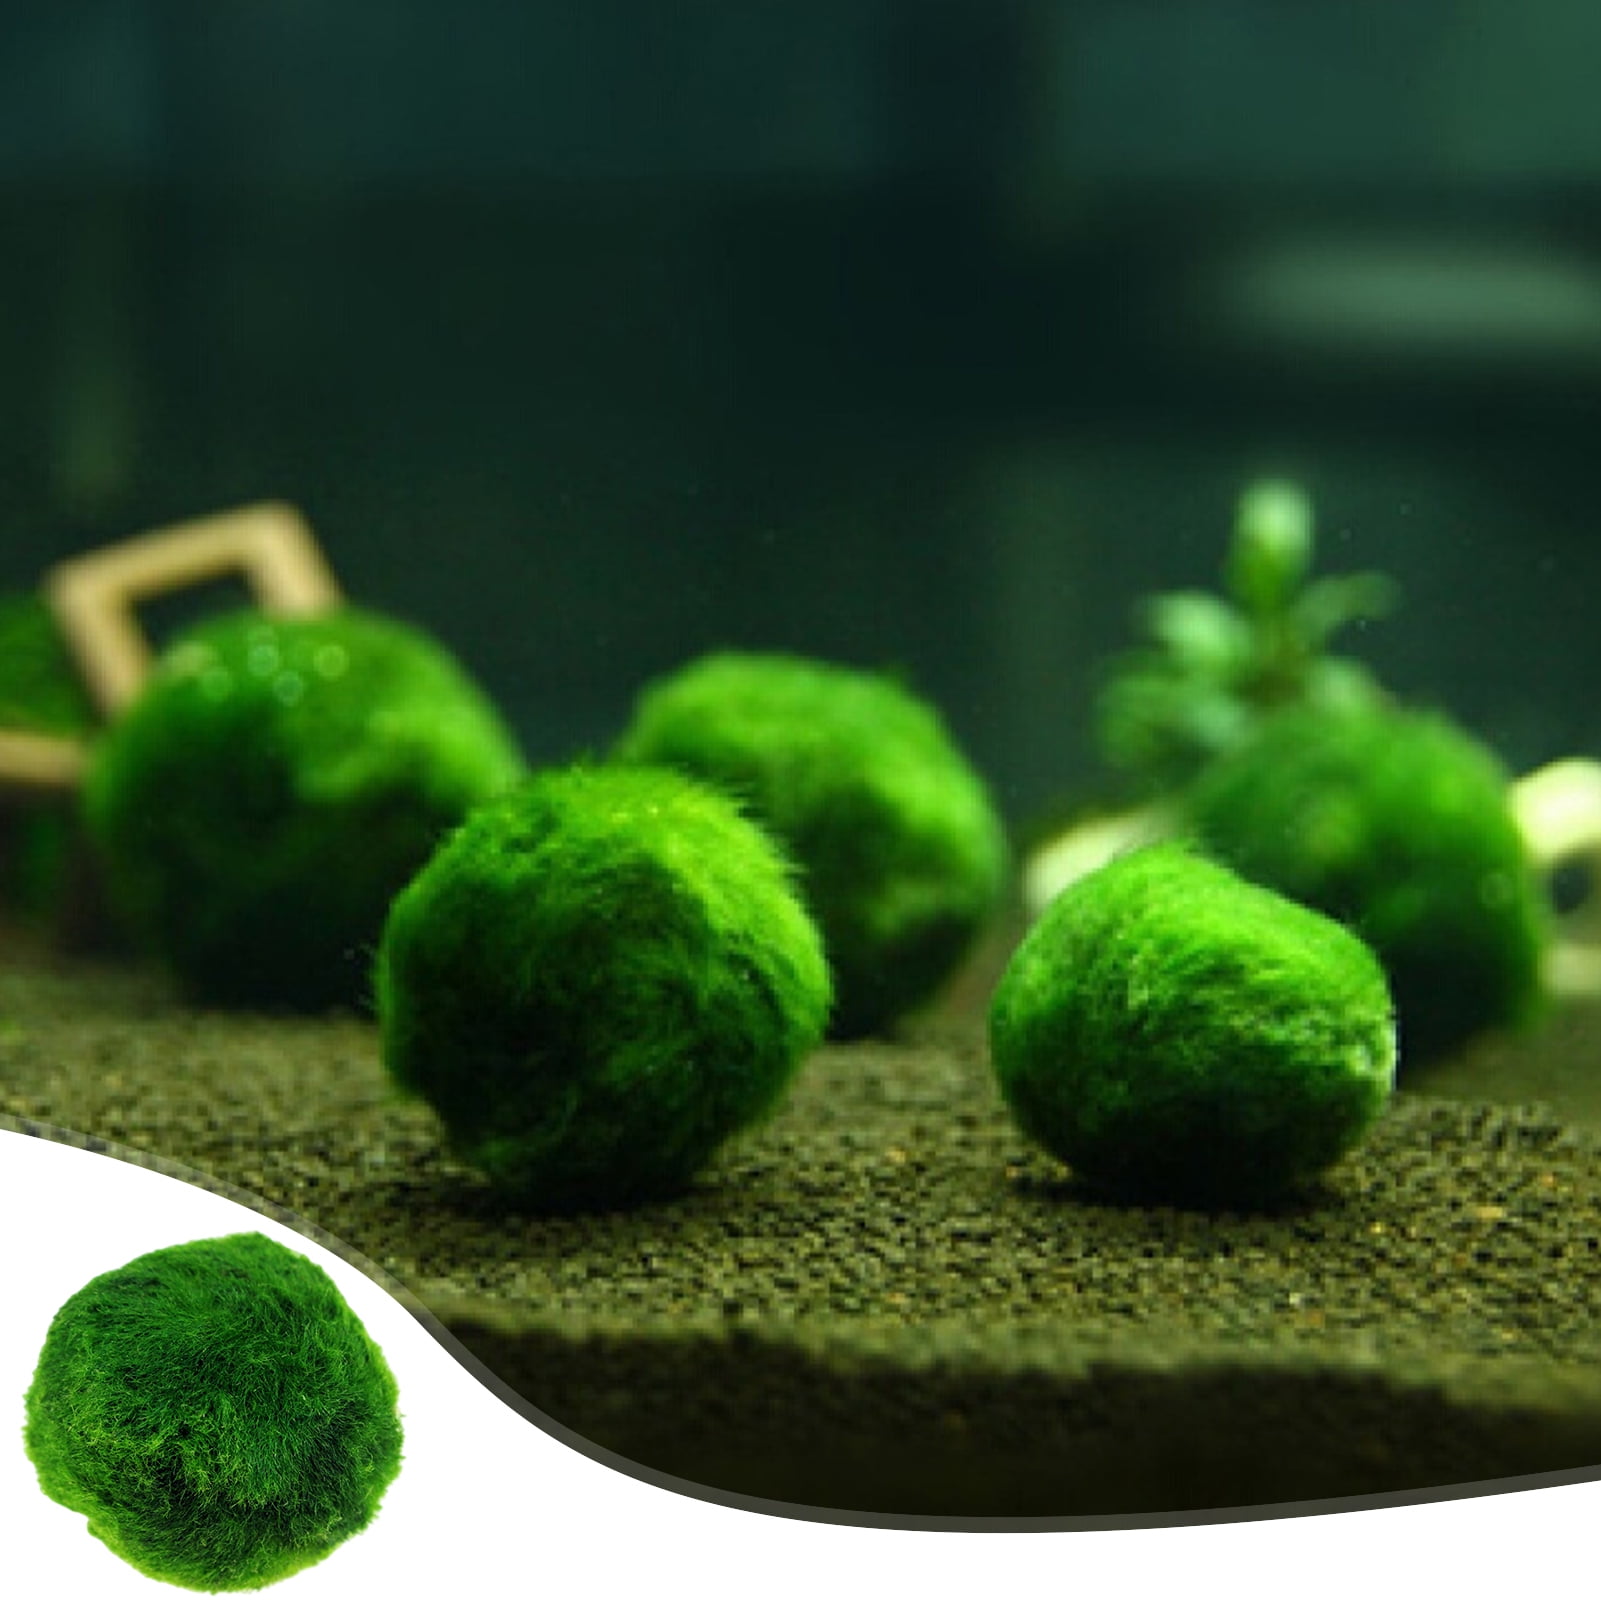 Live Aquarium Plant Marimo Moss Balls Simulation Green Algae Balls Fish  Shrimp Tank Ornament Artificial Plant 1Pc 2-3cm - AliExpress